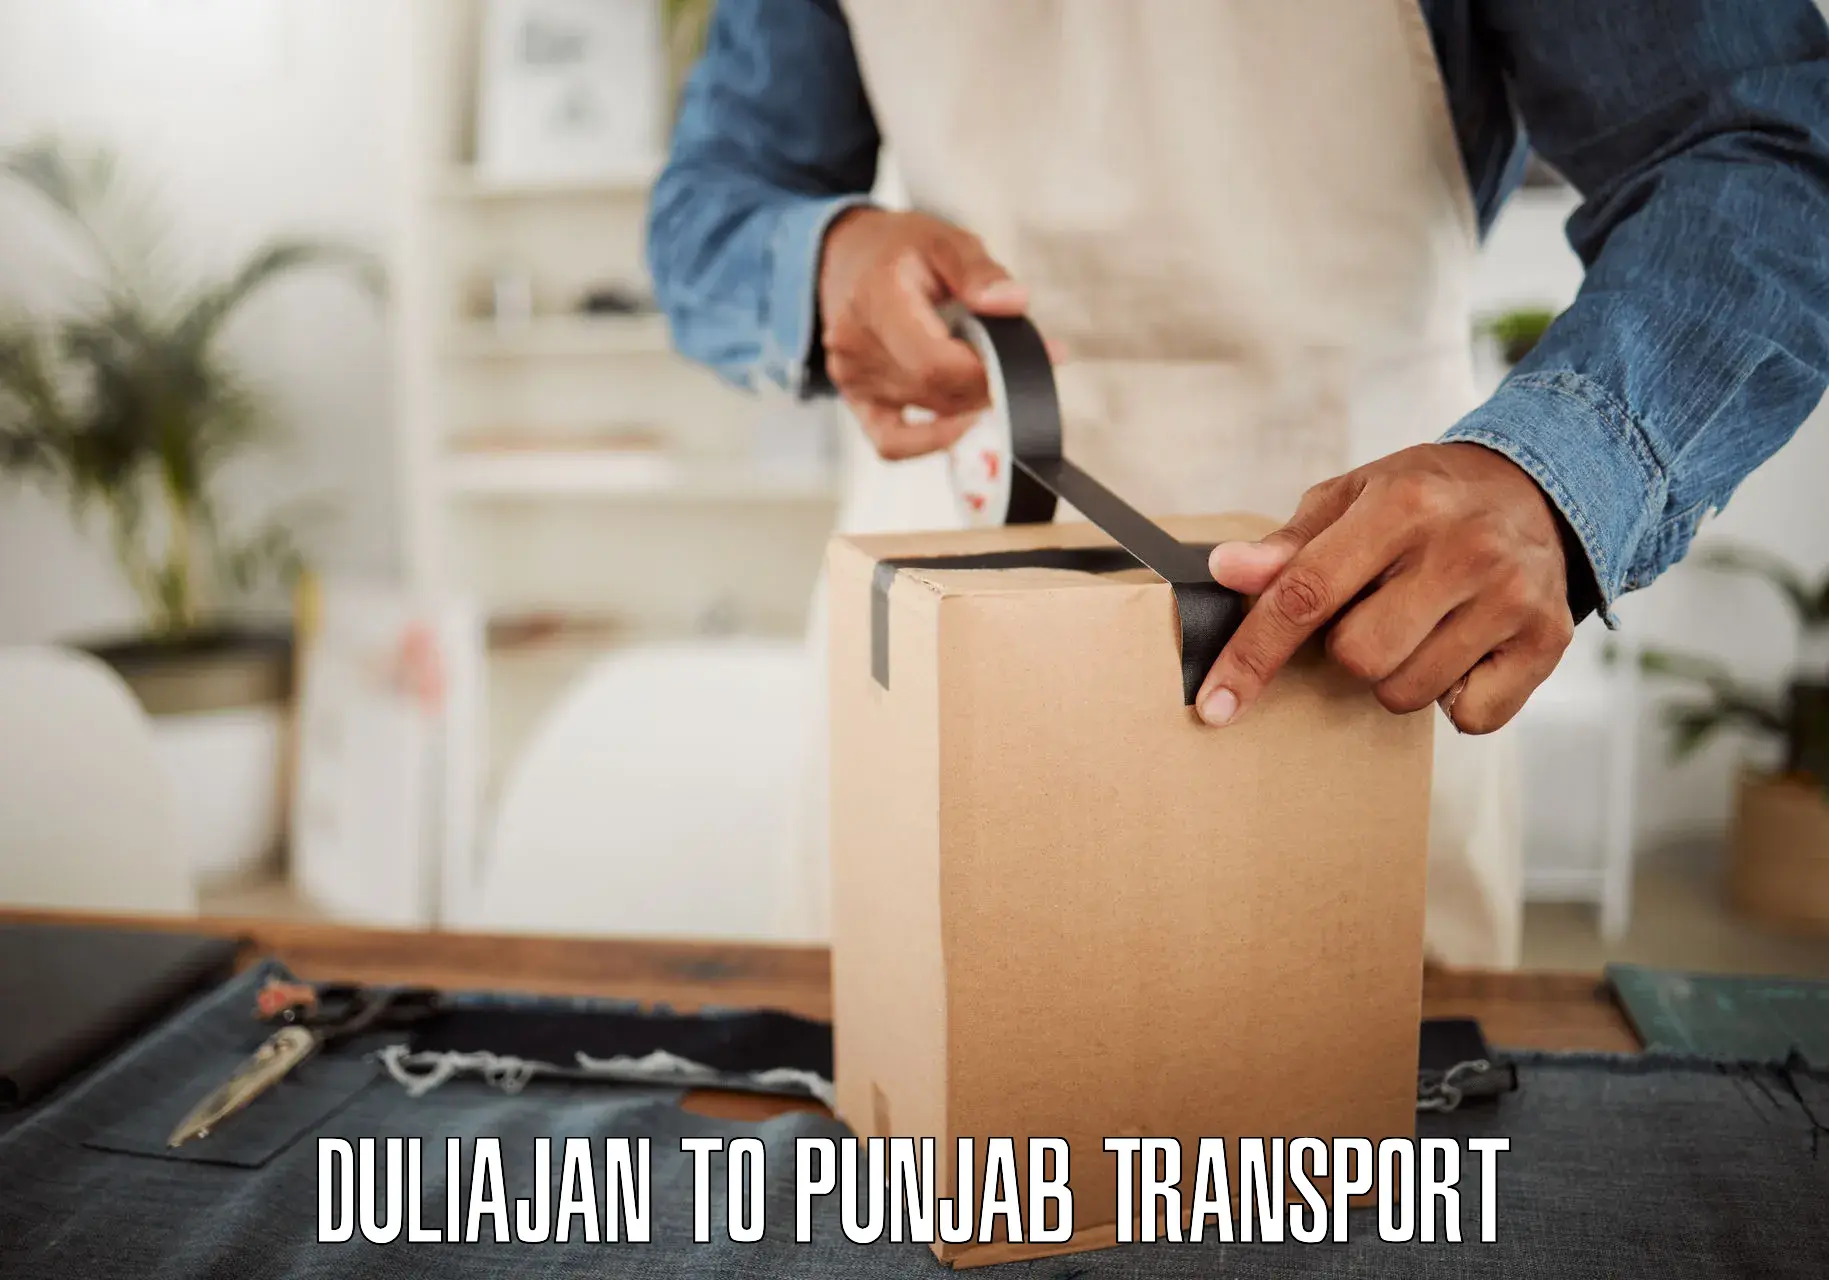 Parcel transport services in Duliajan to Jalandhar